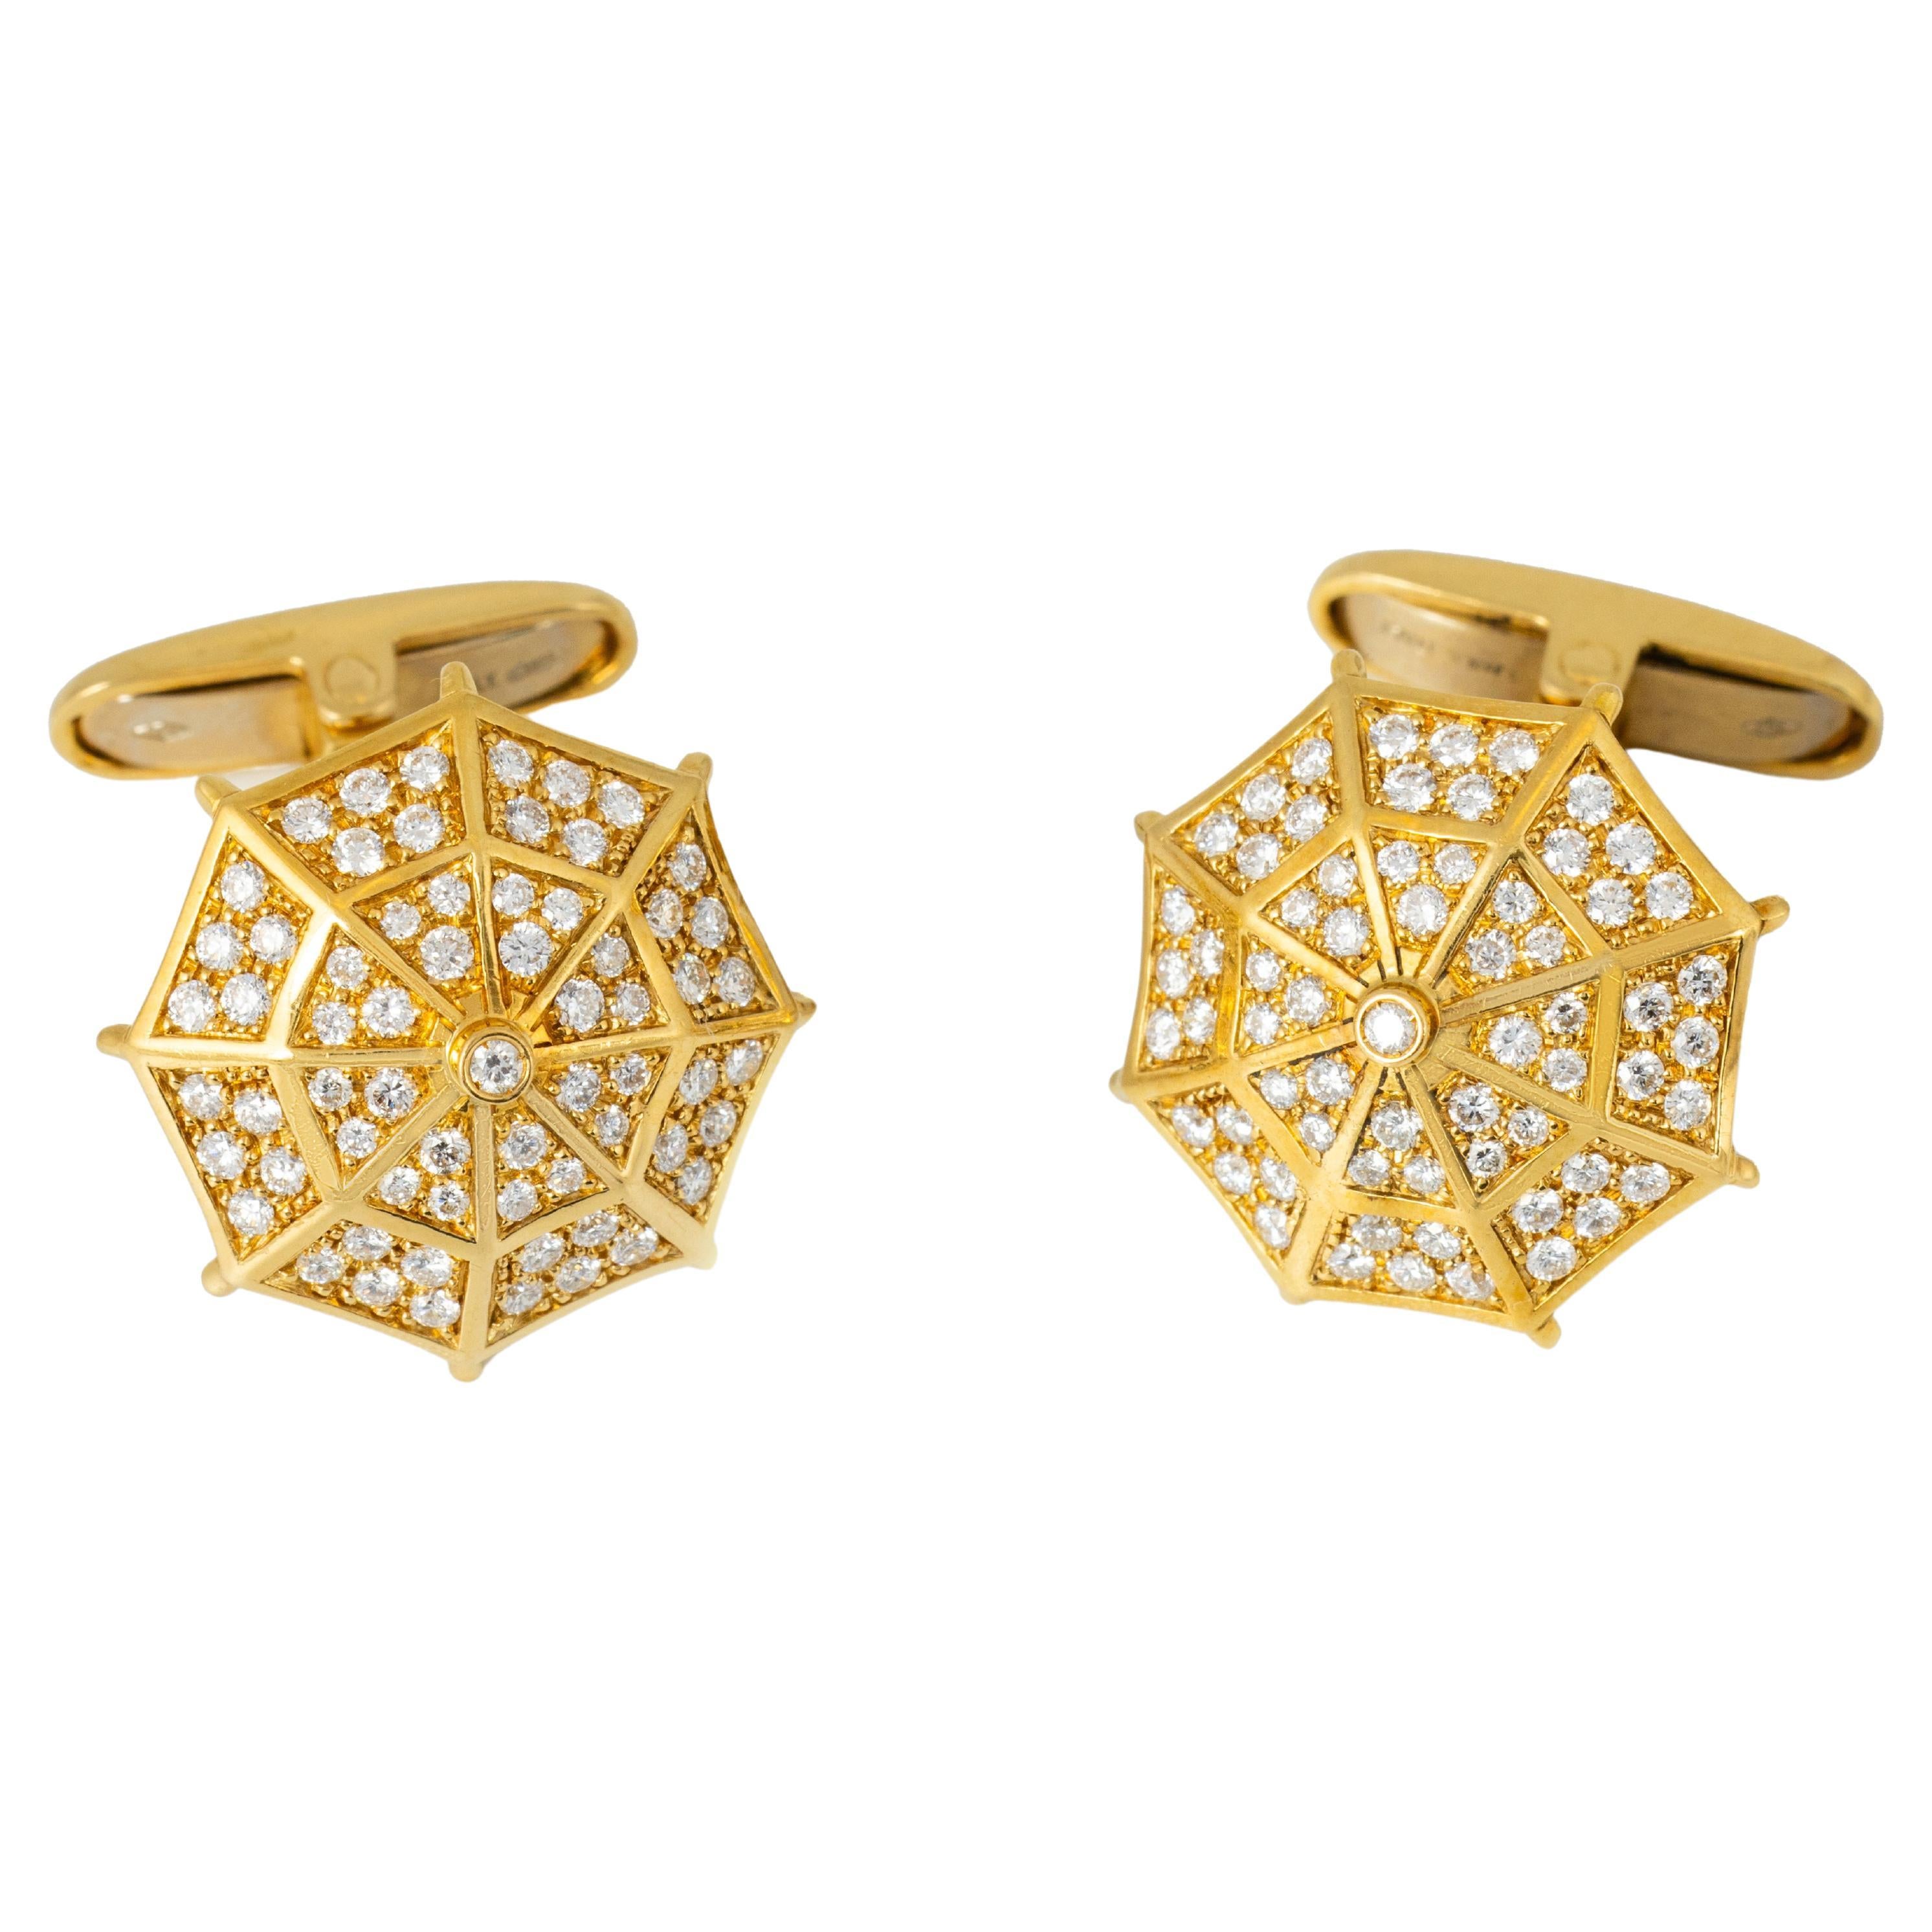 Boutons de manchette "Costis" Umbrella Collection YG - Pave' avec 1,19 carats de diamants 